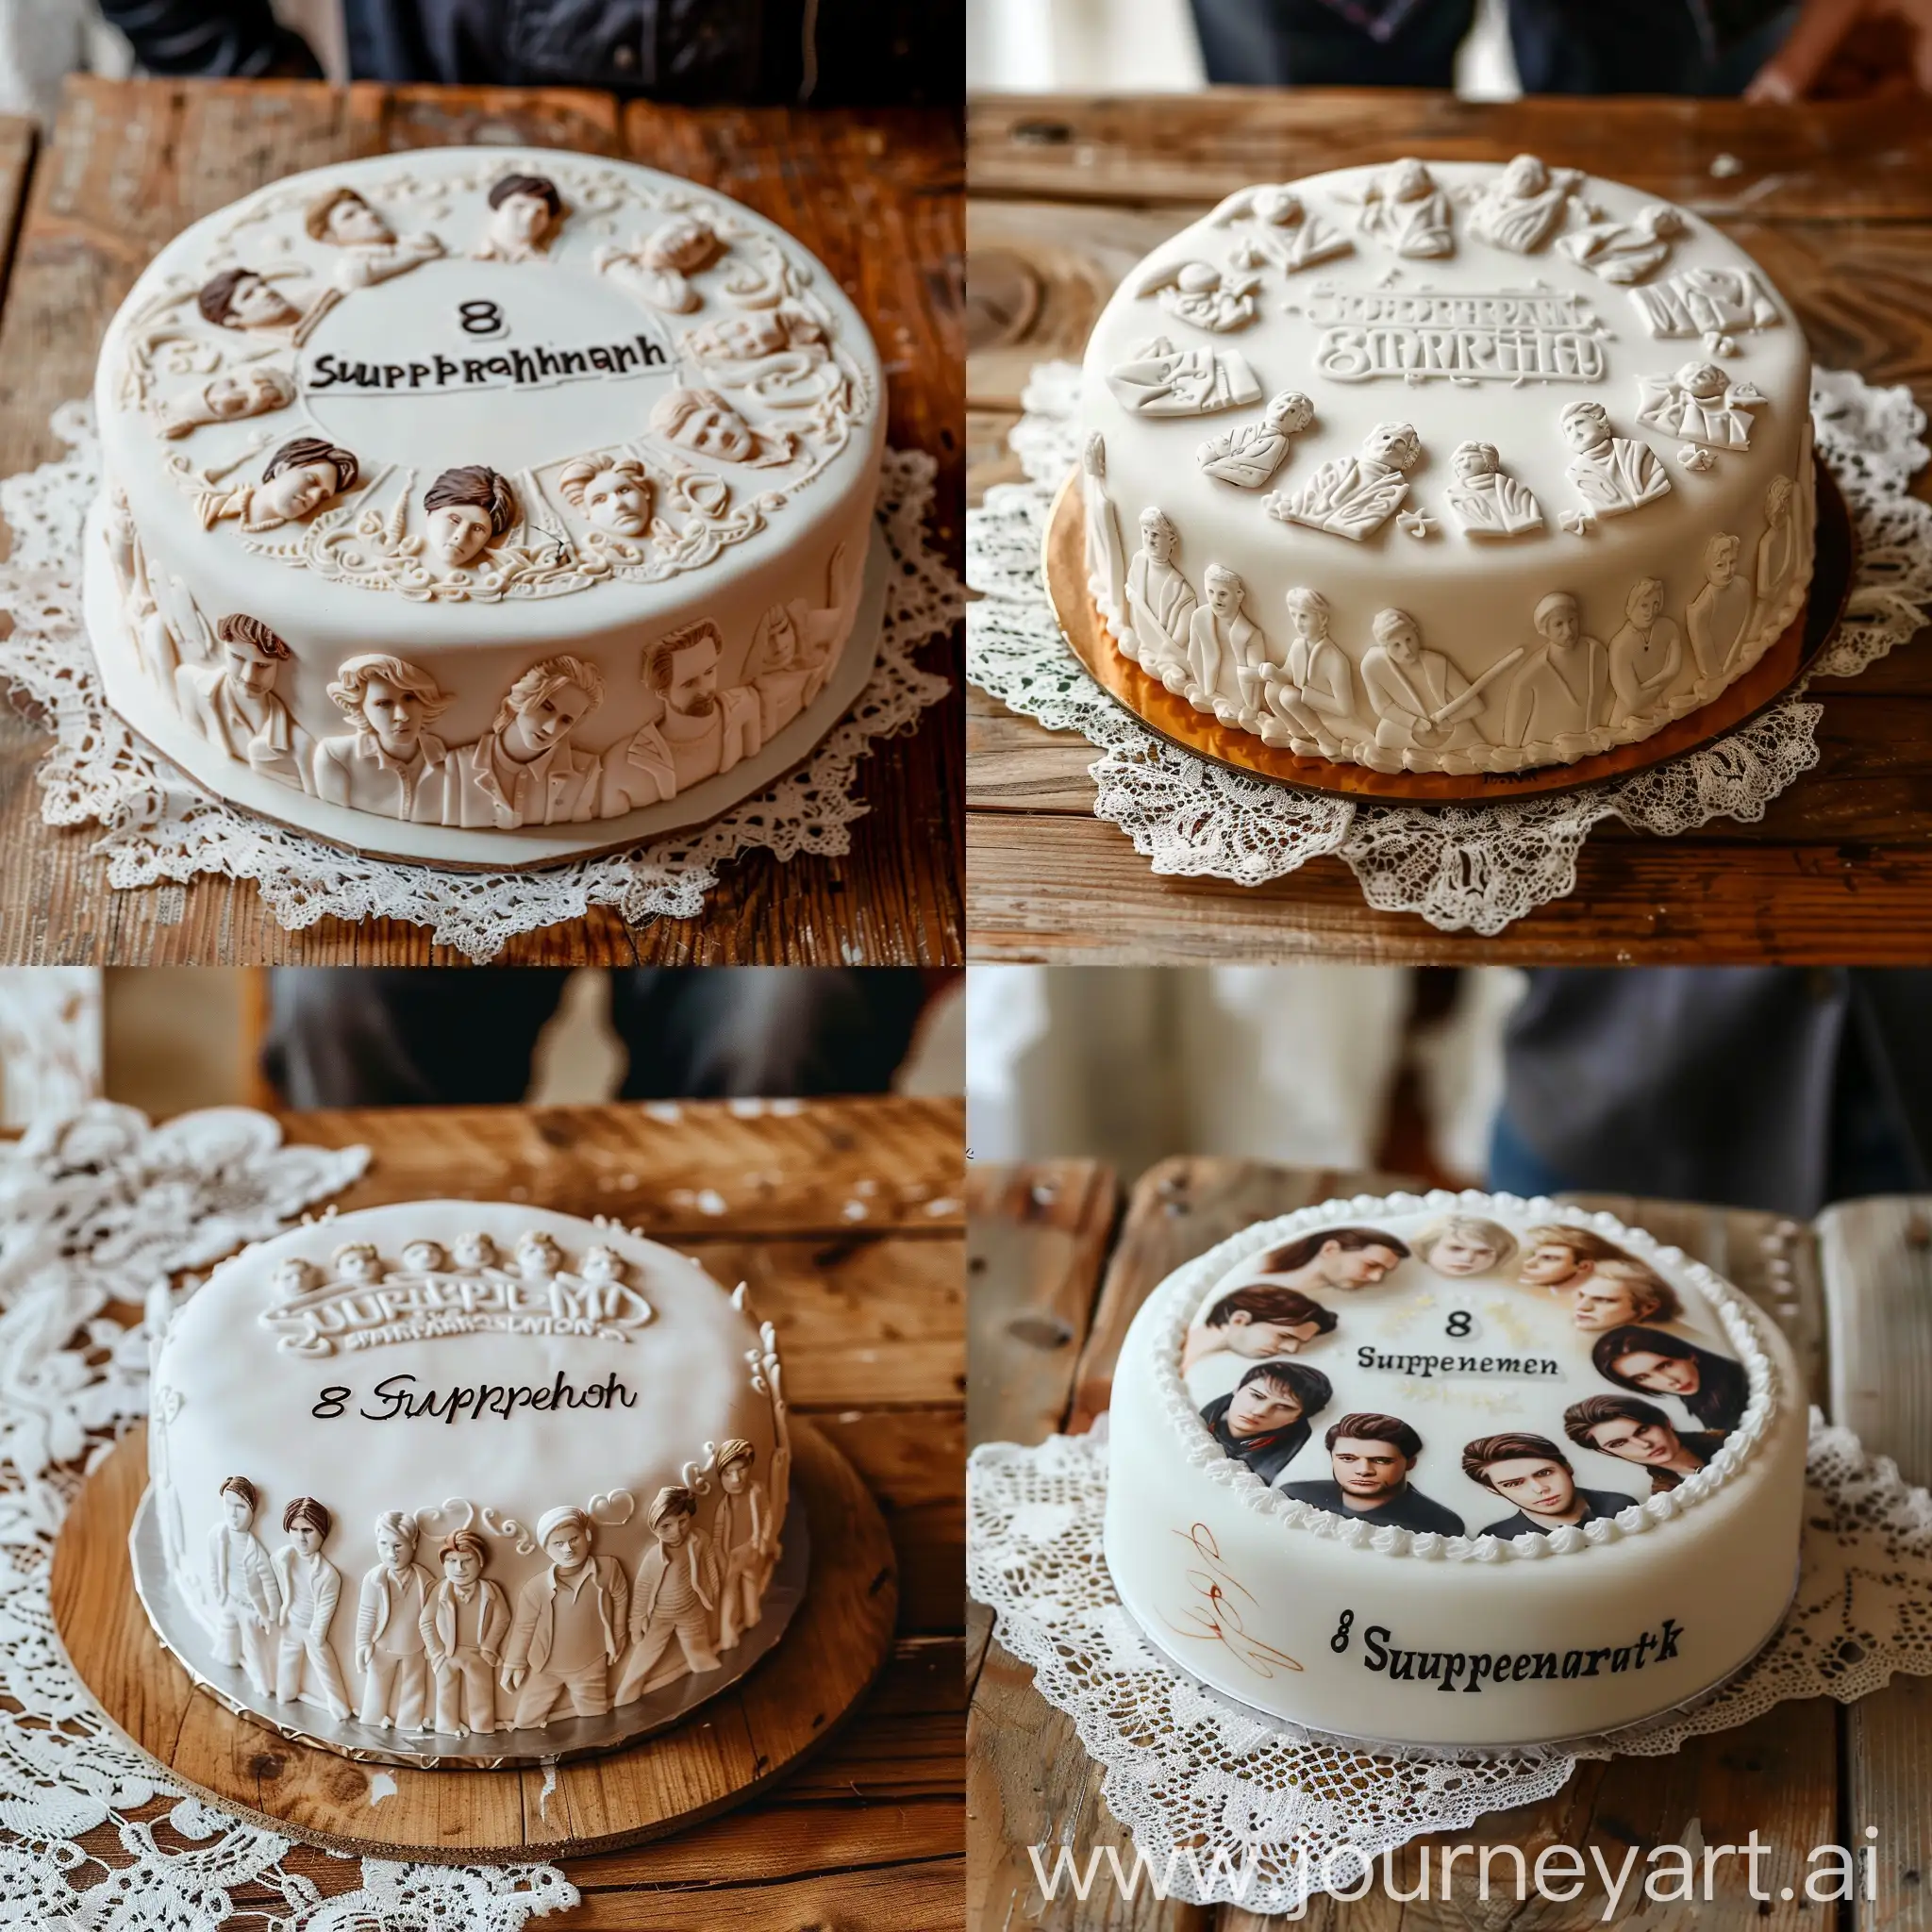 белый торт с изображением героев сериала "Сверъестественное" и надписью "8 марта", торт на деревянном столе, покрытом кружевной скатертью